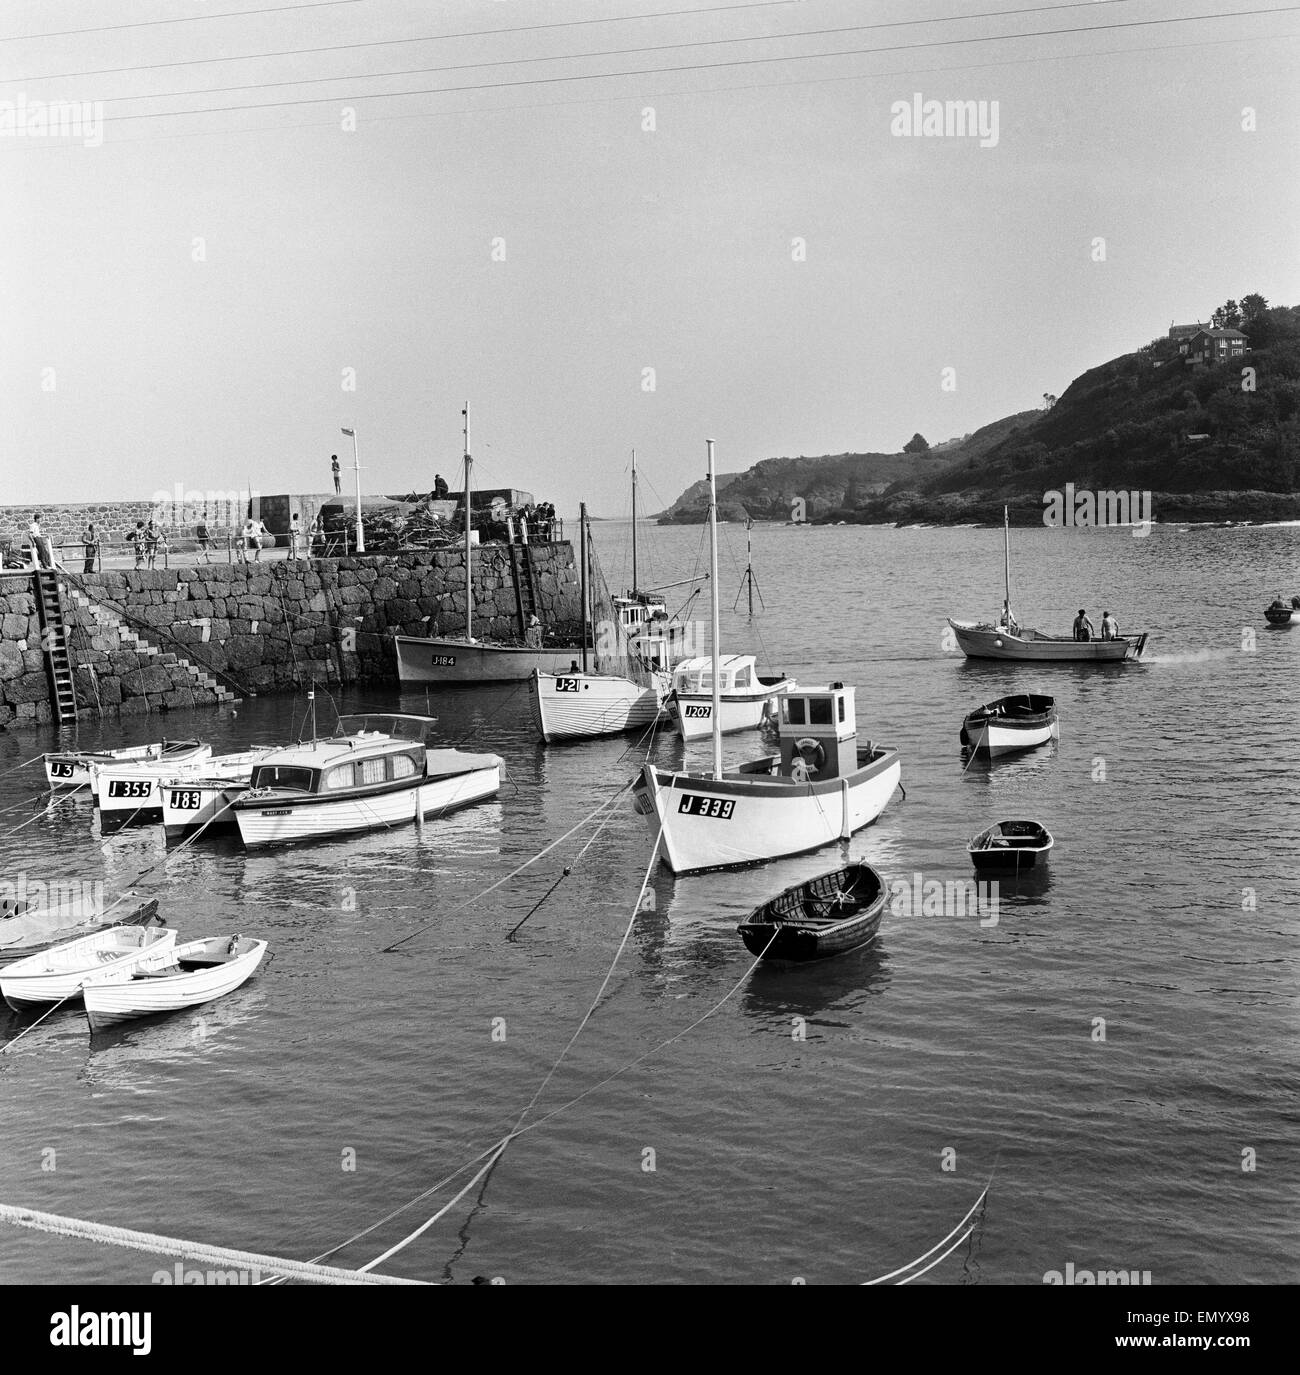 Une vue sur le port de Rozel sur l'île de Jersey, Channel Islands. Septembre 1965. Banque D'Images